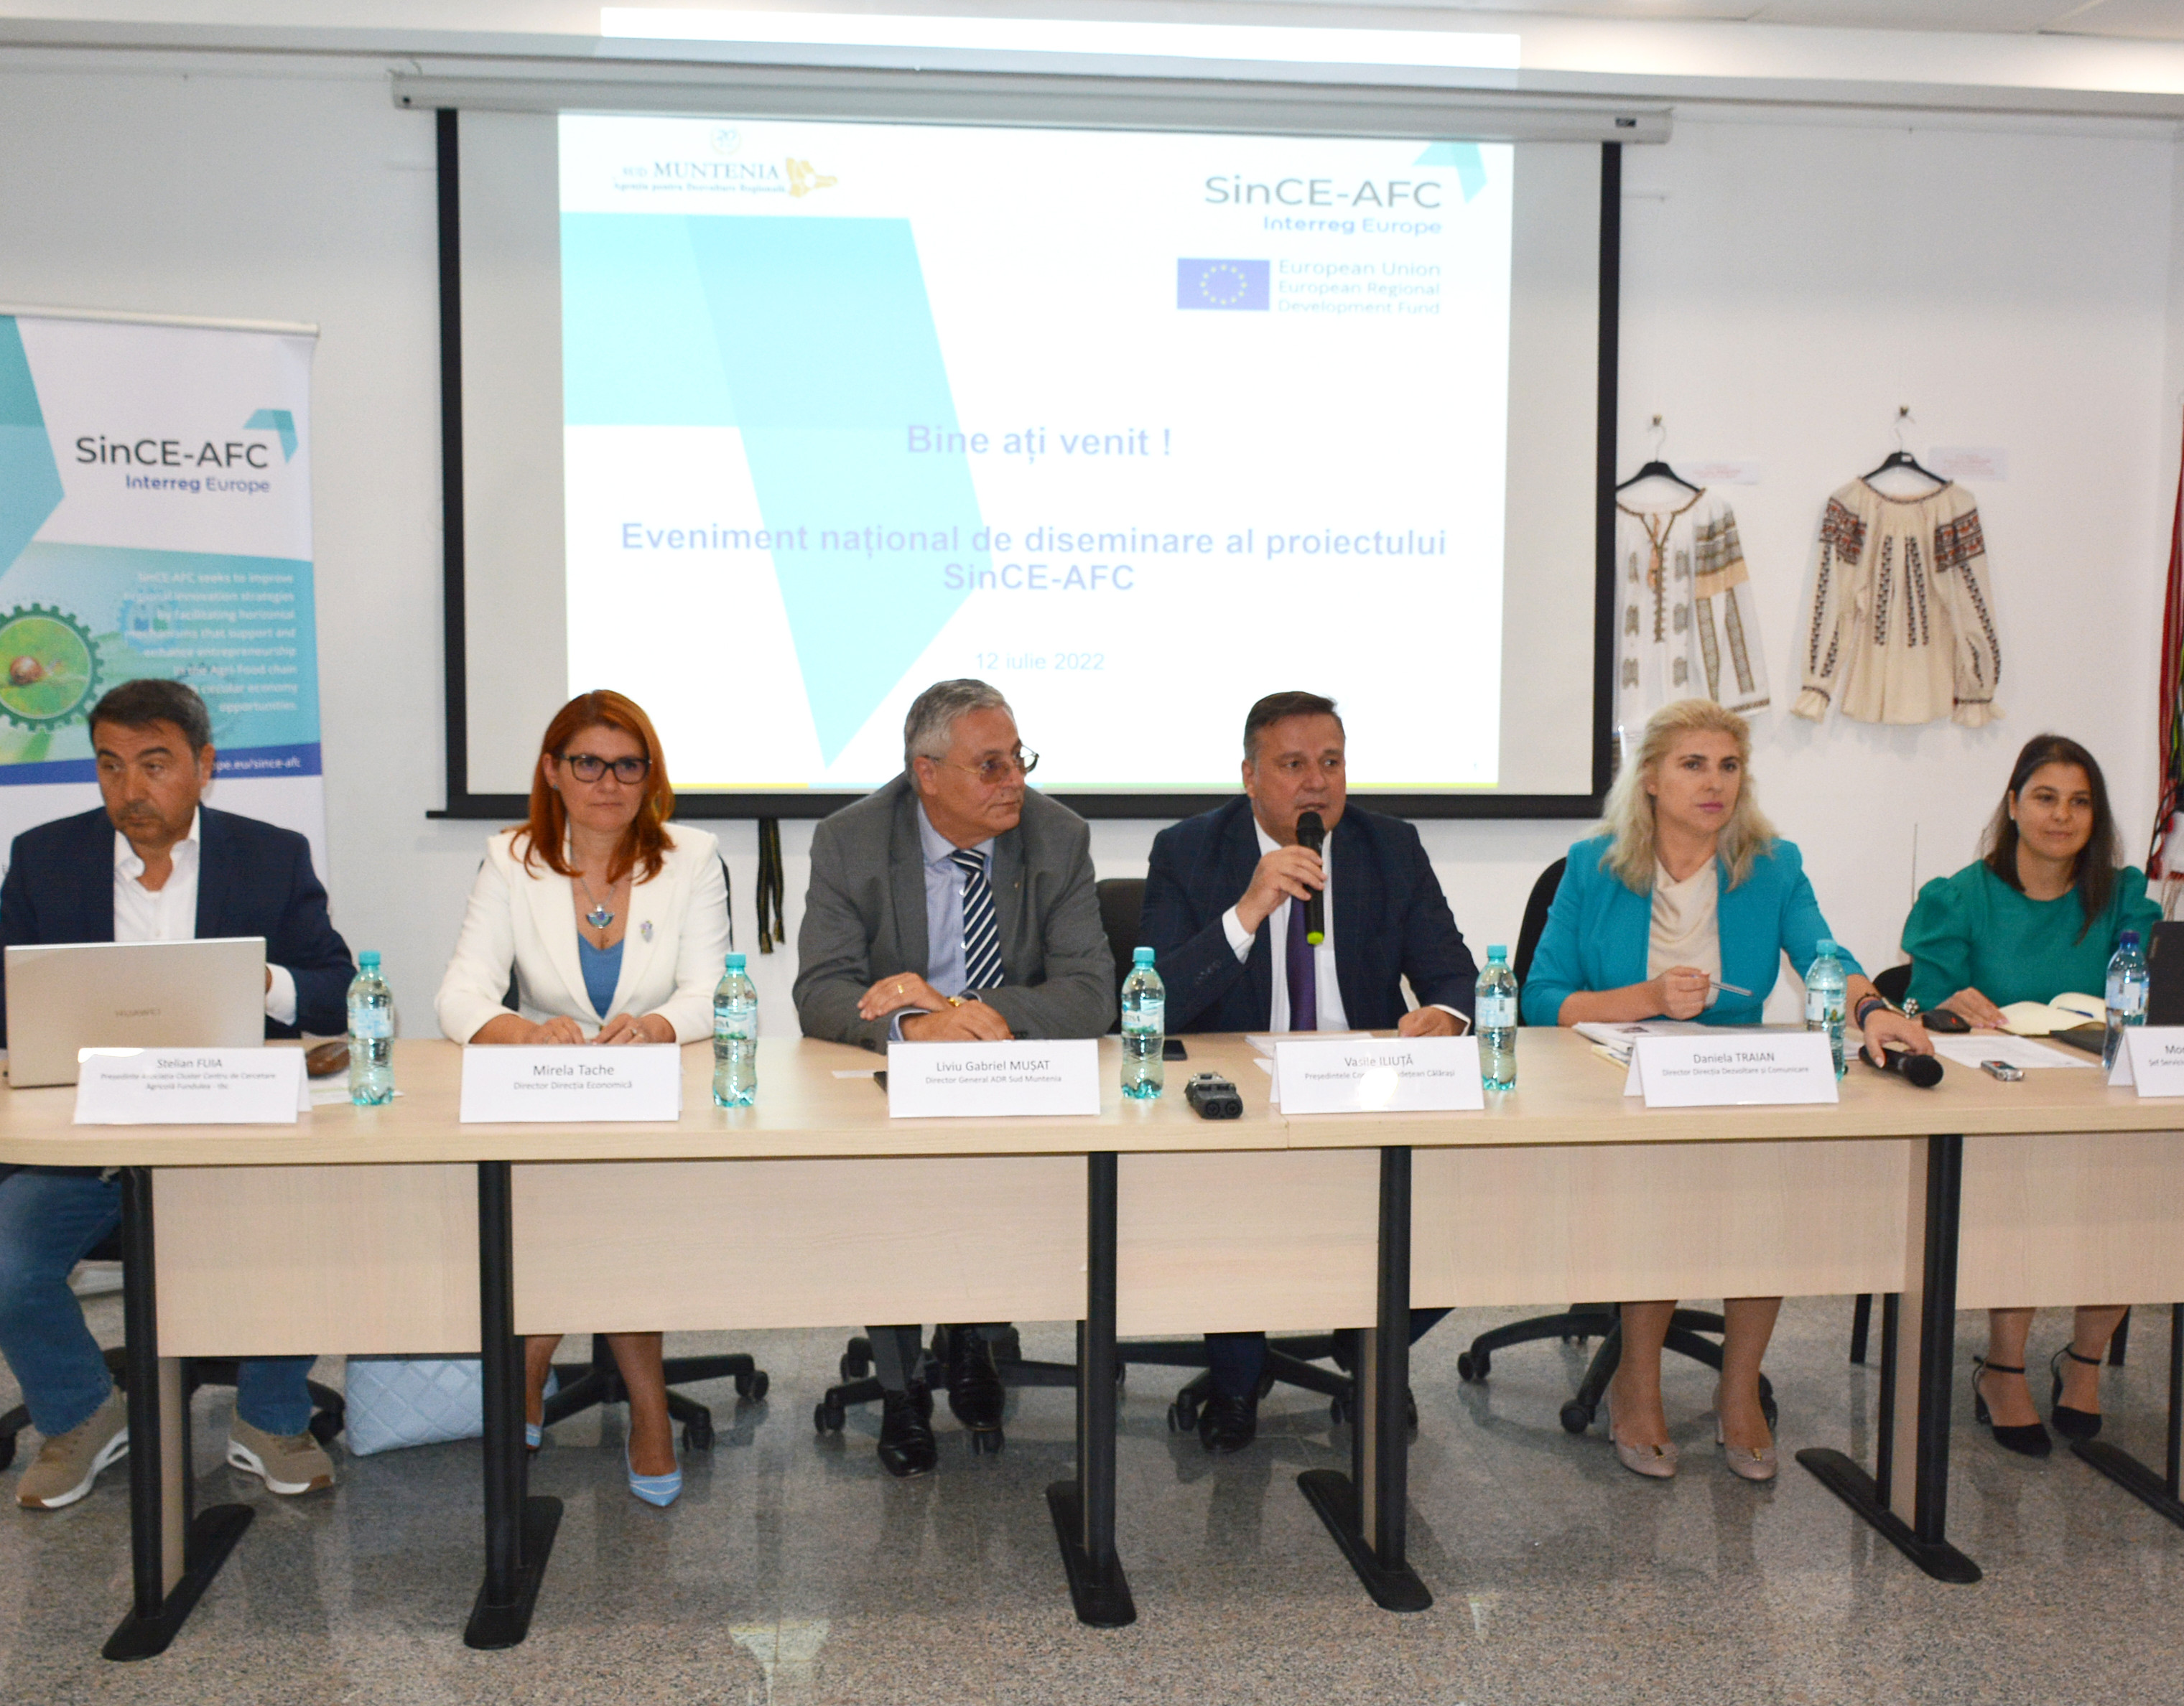 Eveniment național de diseminare a Proiectului SinCE-AFC, organizat la Călărași